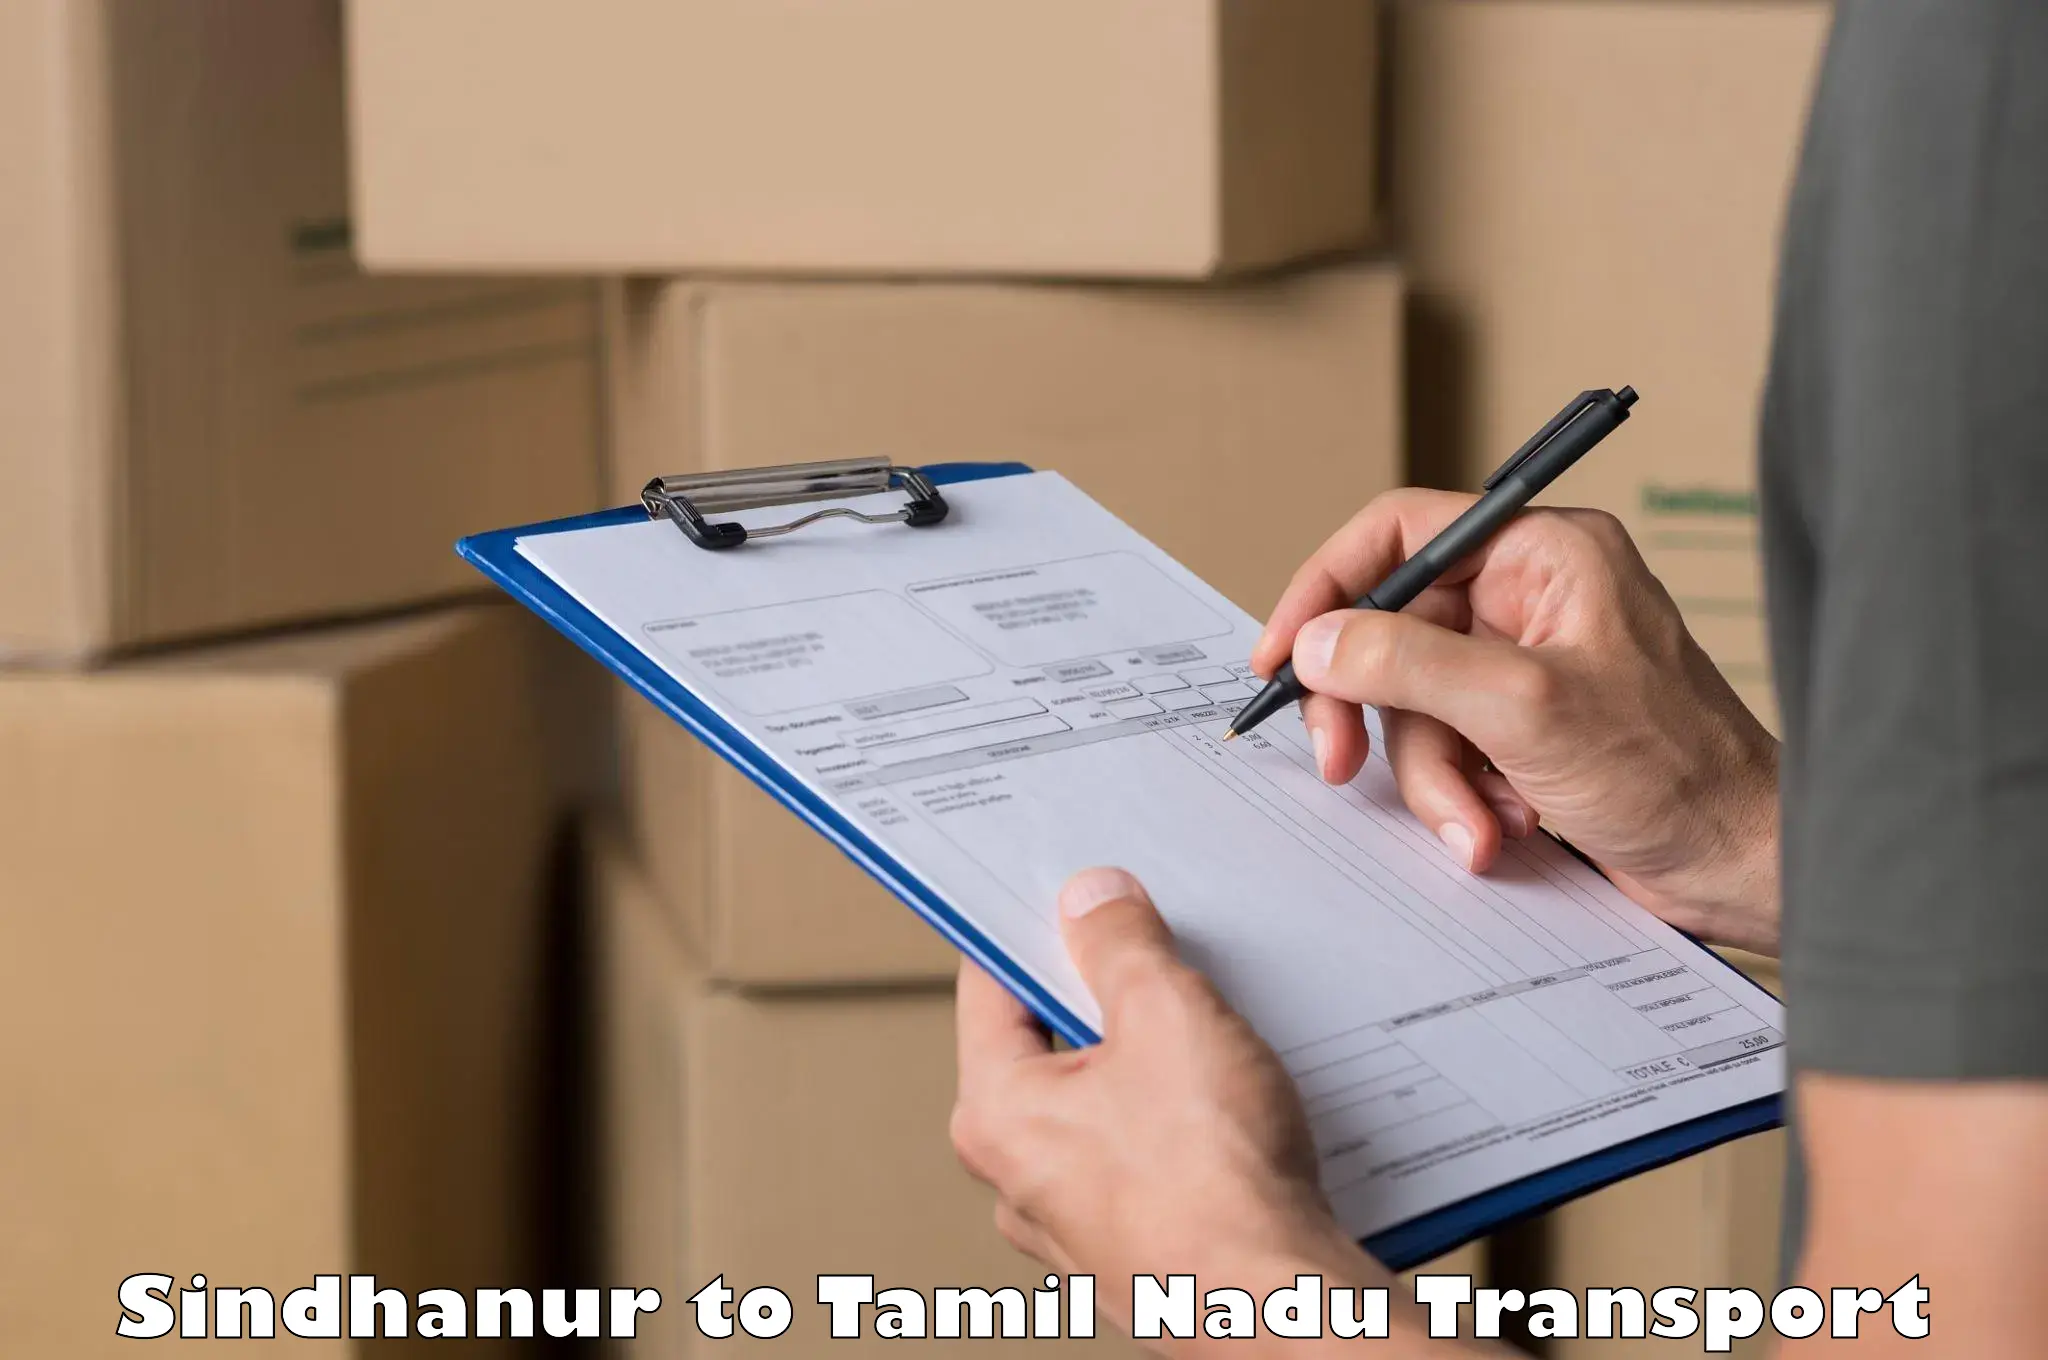 Cargo transportation services Sindhanur to Periyakulam